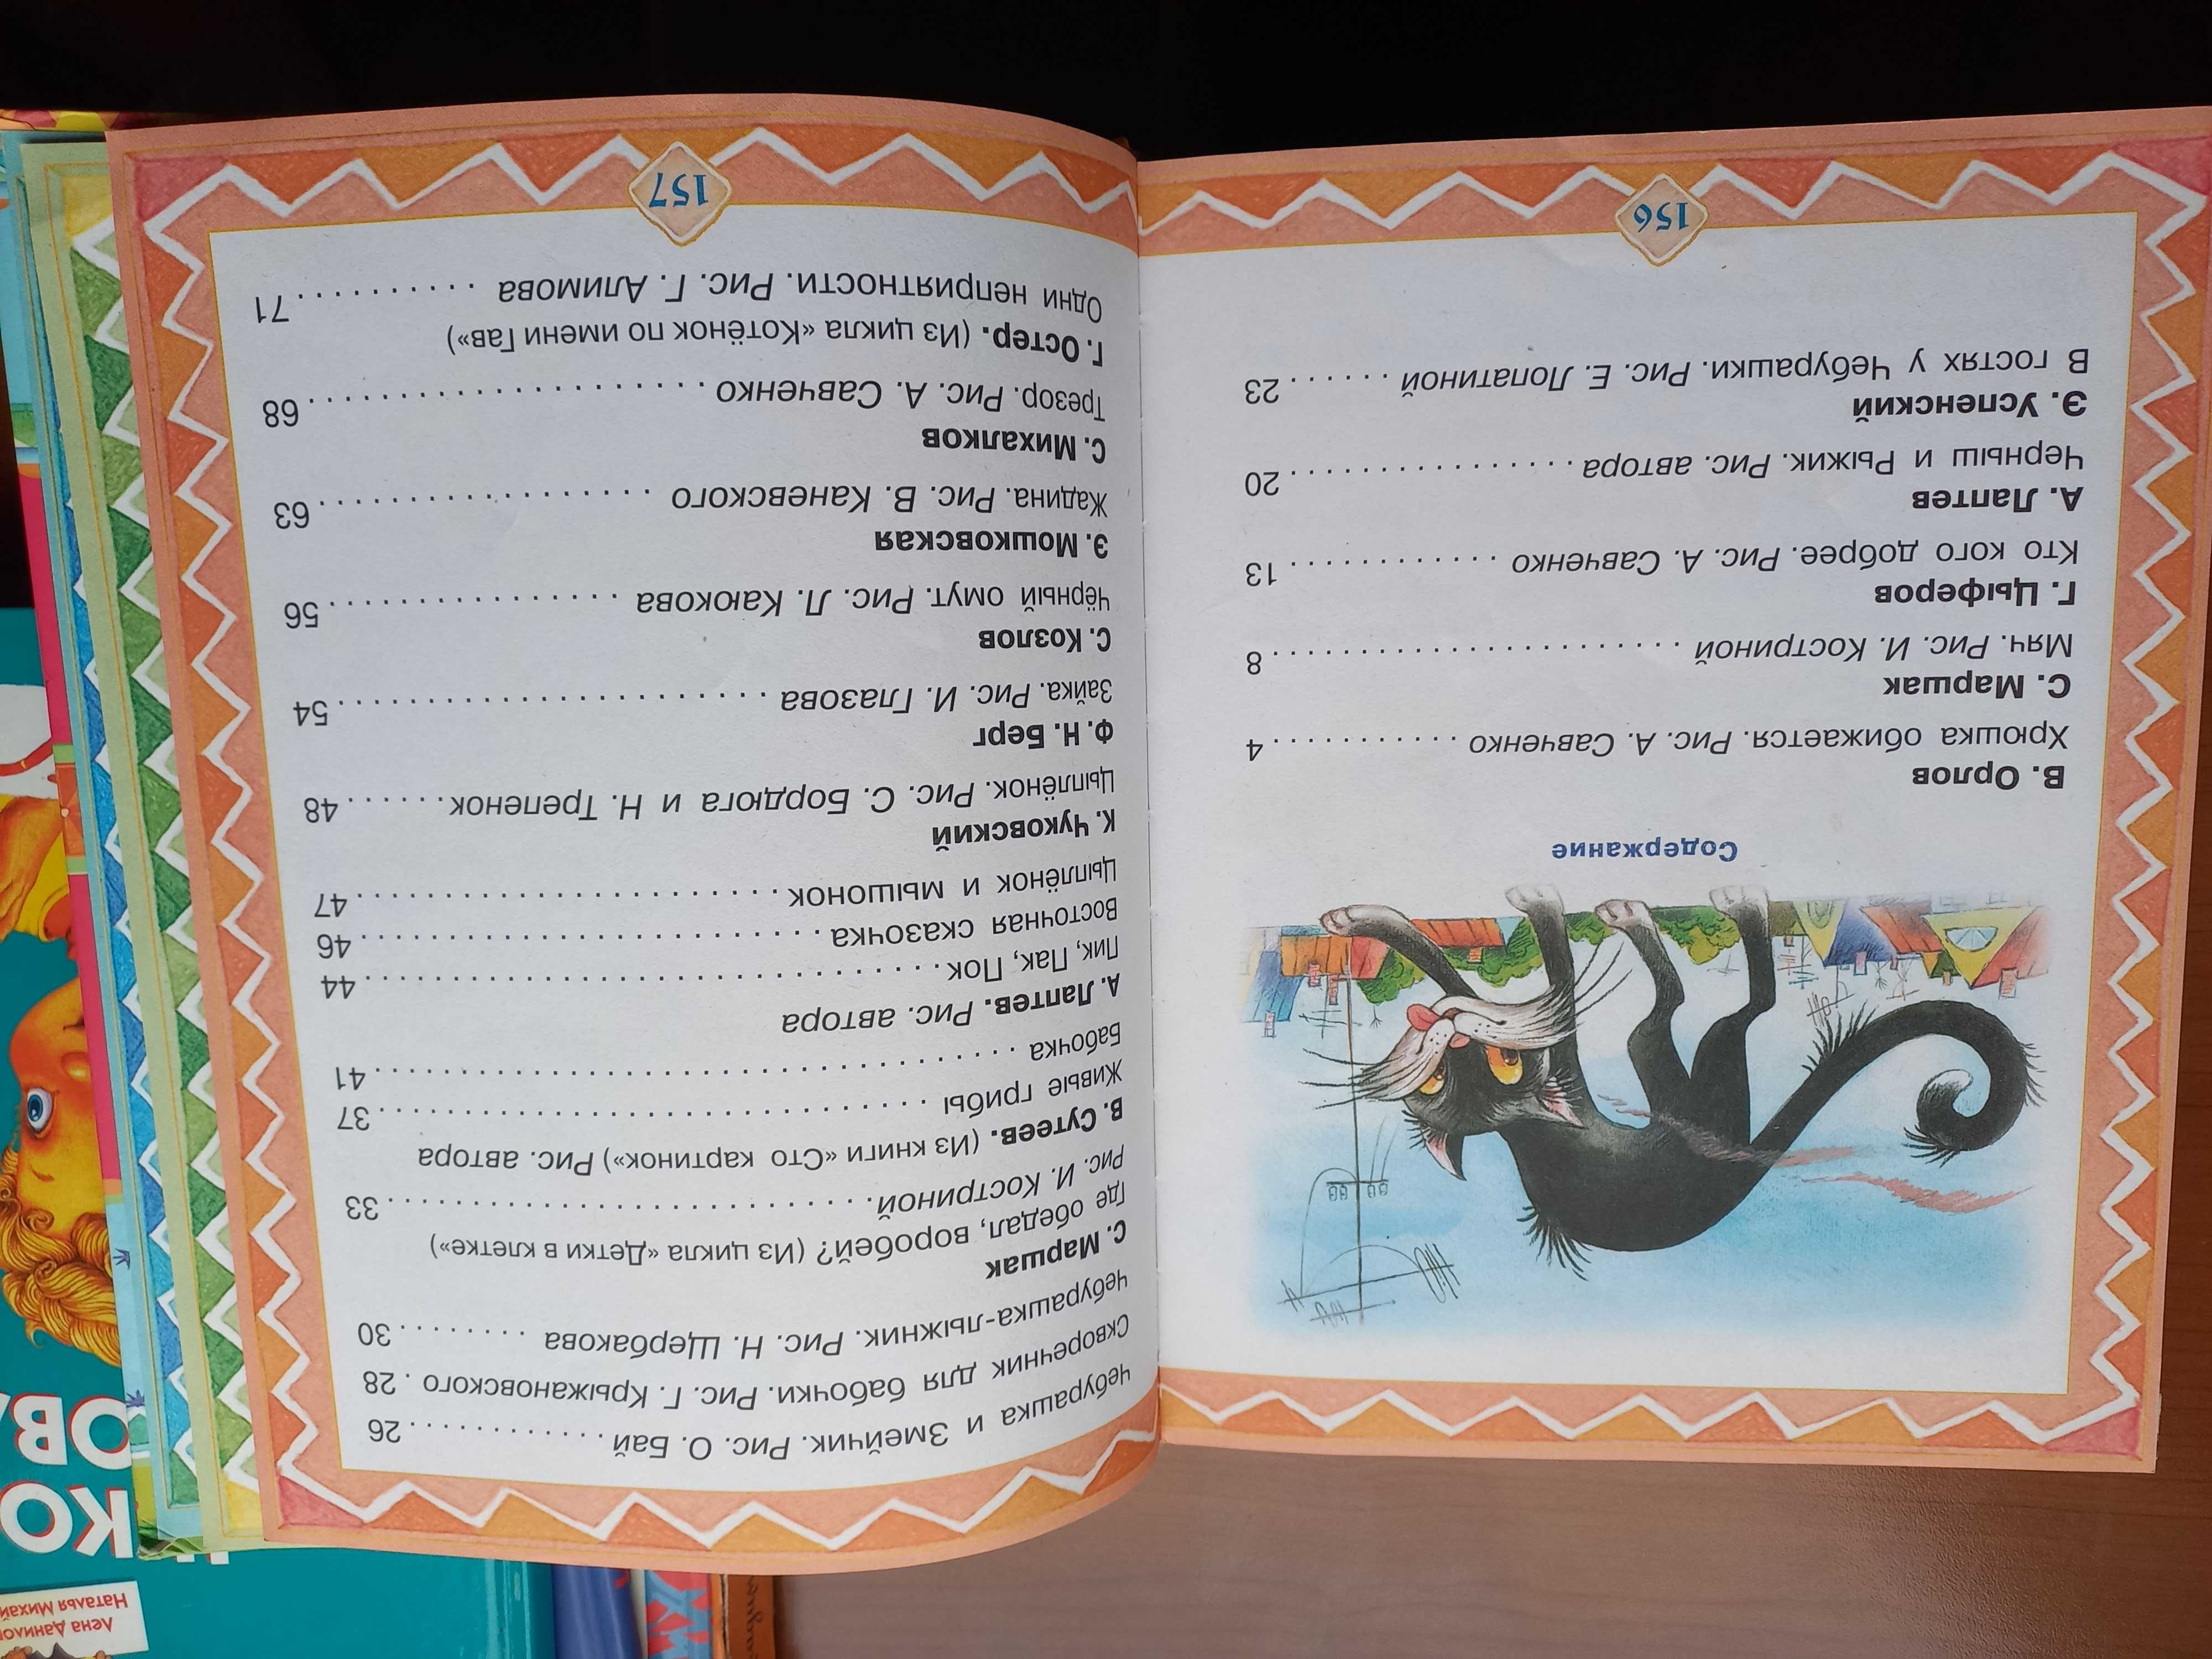 Детские книги на русском языке